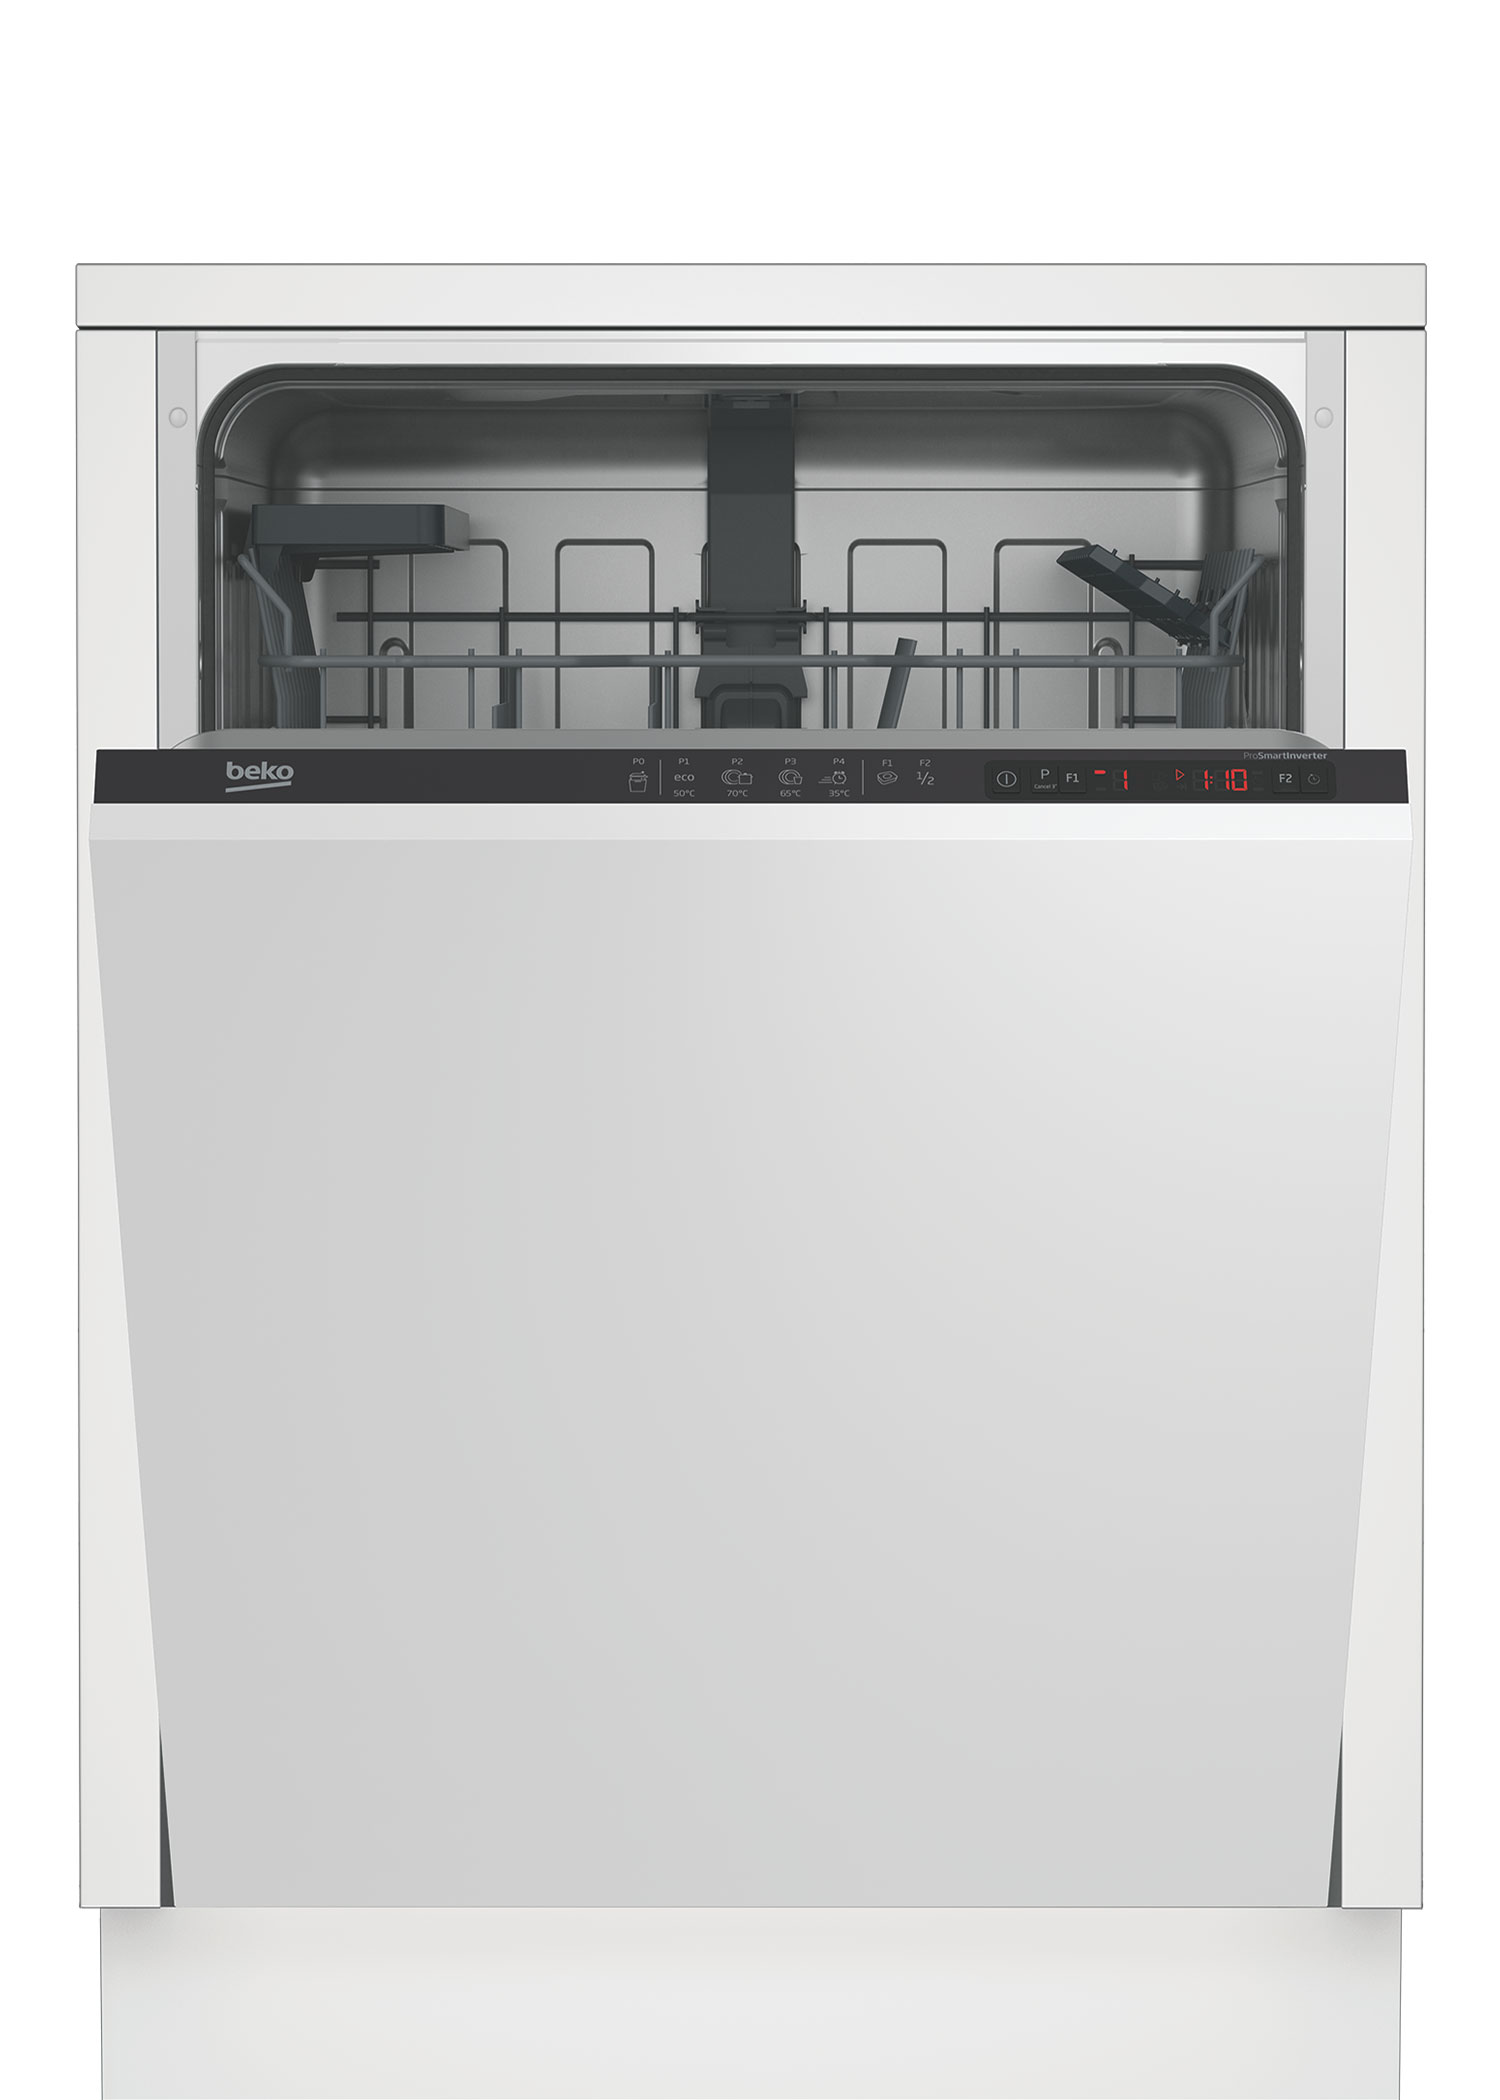 Встраиваемая посудомоечная машина Beko DIN24310 встраиваемая посудомоечная машина beko bdis15020